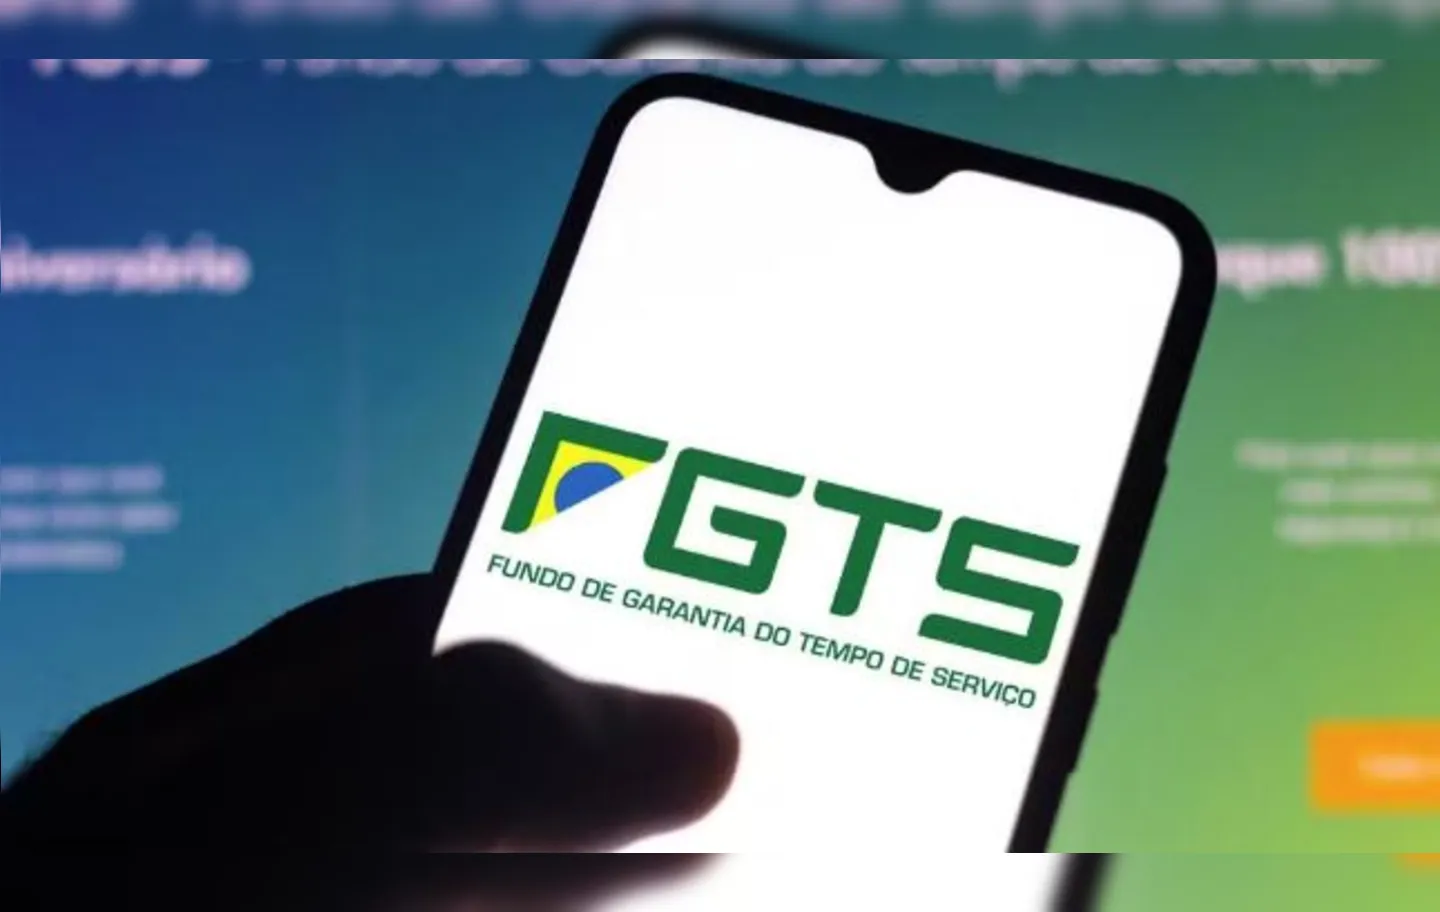 O novo sistema permitirá a emissão de guias digitais para pagamento do FGTS